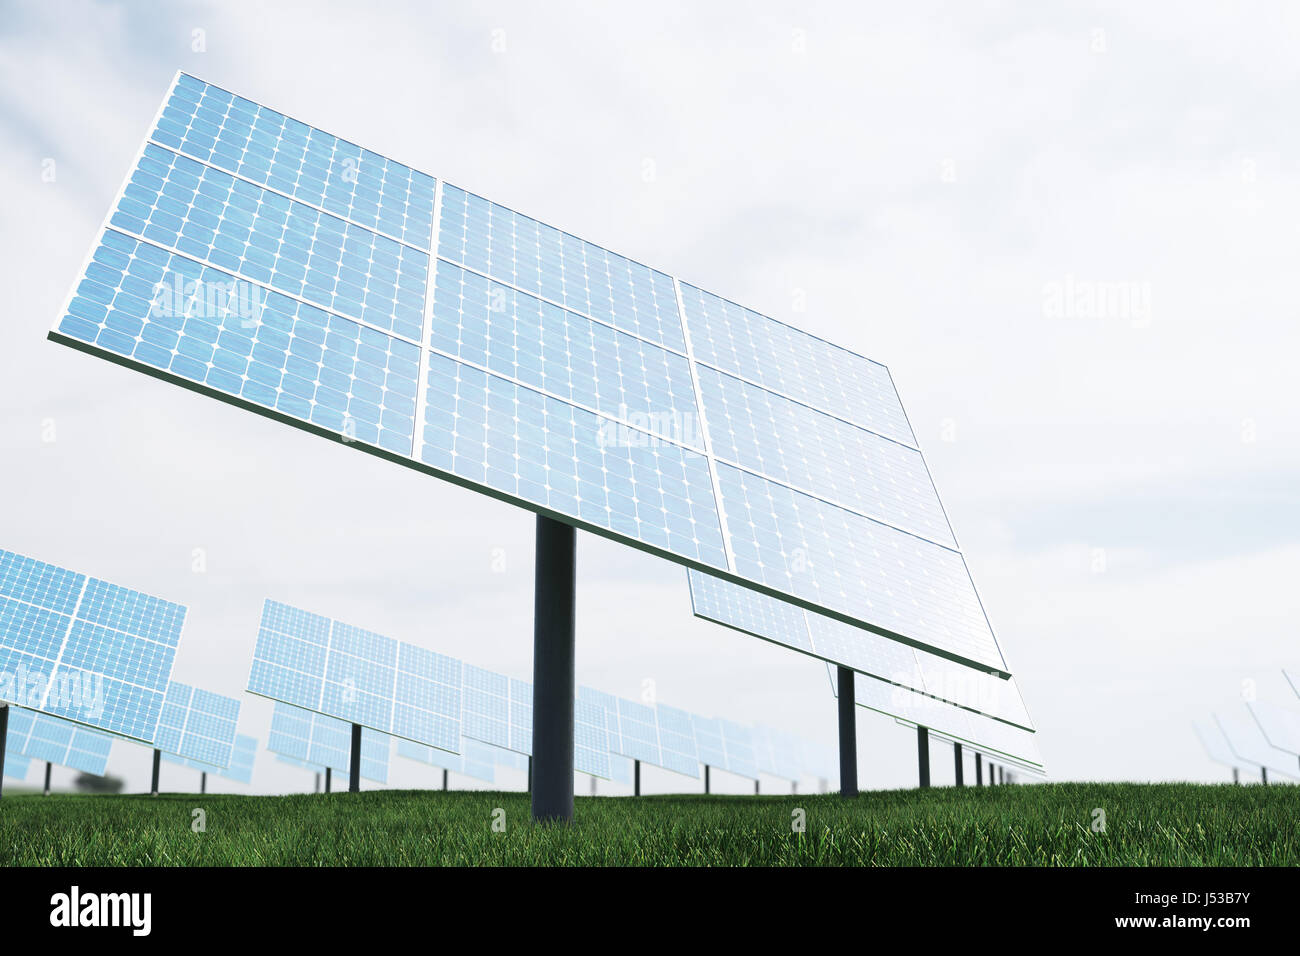 Illustration 3D de la réflexion des nuages à l'cellules photovoltaïques. Panneaux solaires bleu sur l'herbe. Source d'électricité alternative Concept. L'énergie écologique, l'énergie propre Banque D'Images